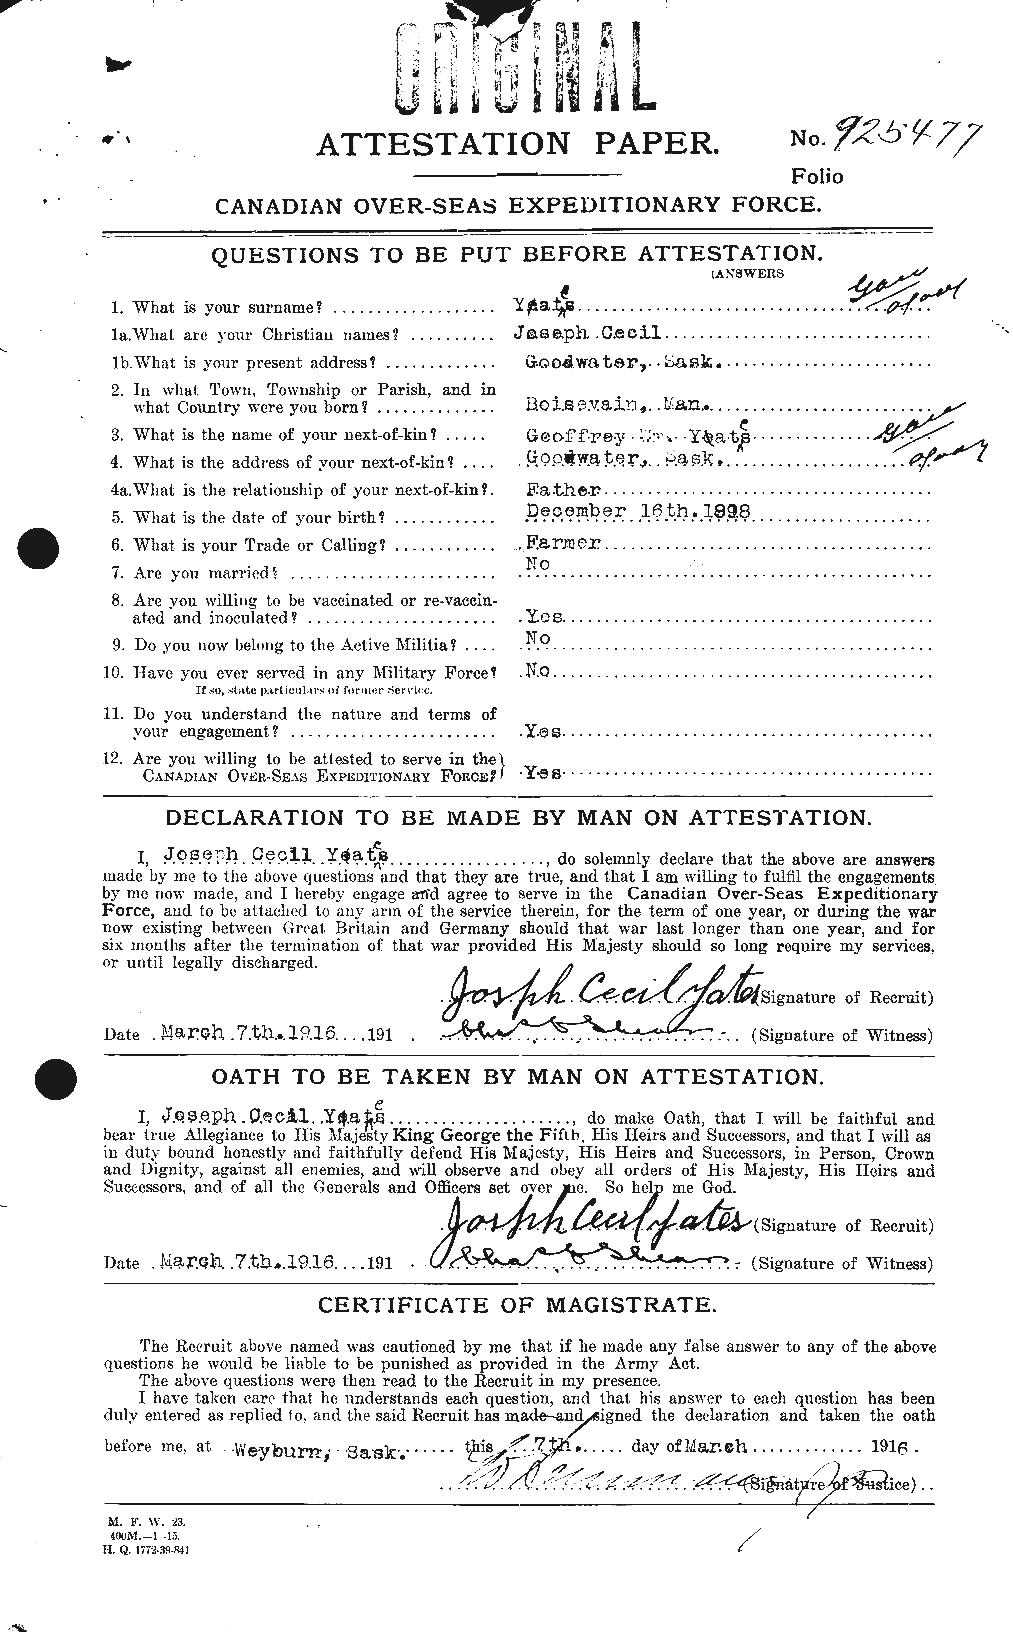 Dossiers du Personnel de la Première Guerre mondiale - CEC 691280a